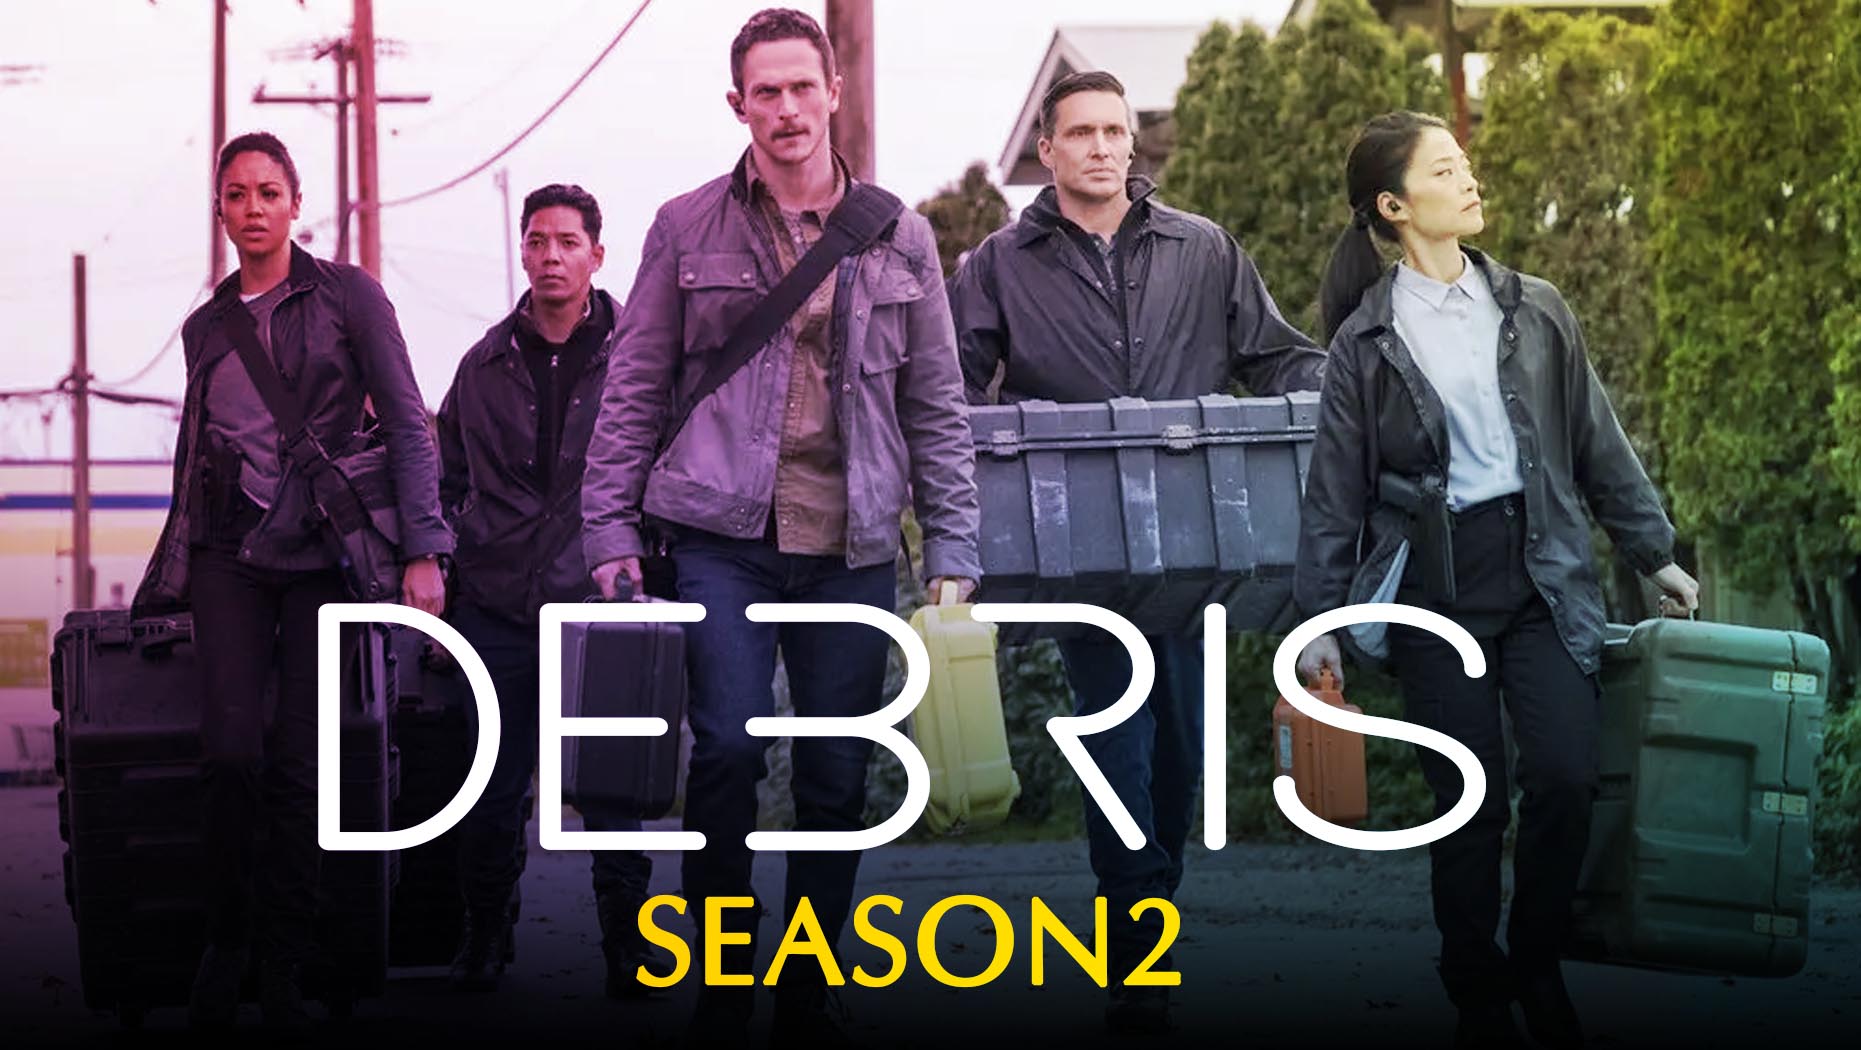 Debris Season 2